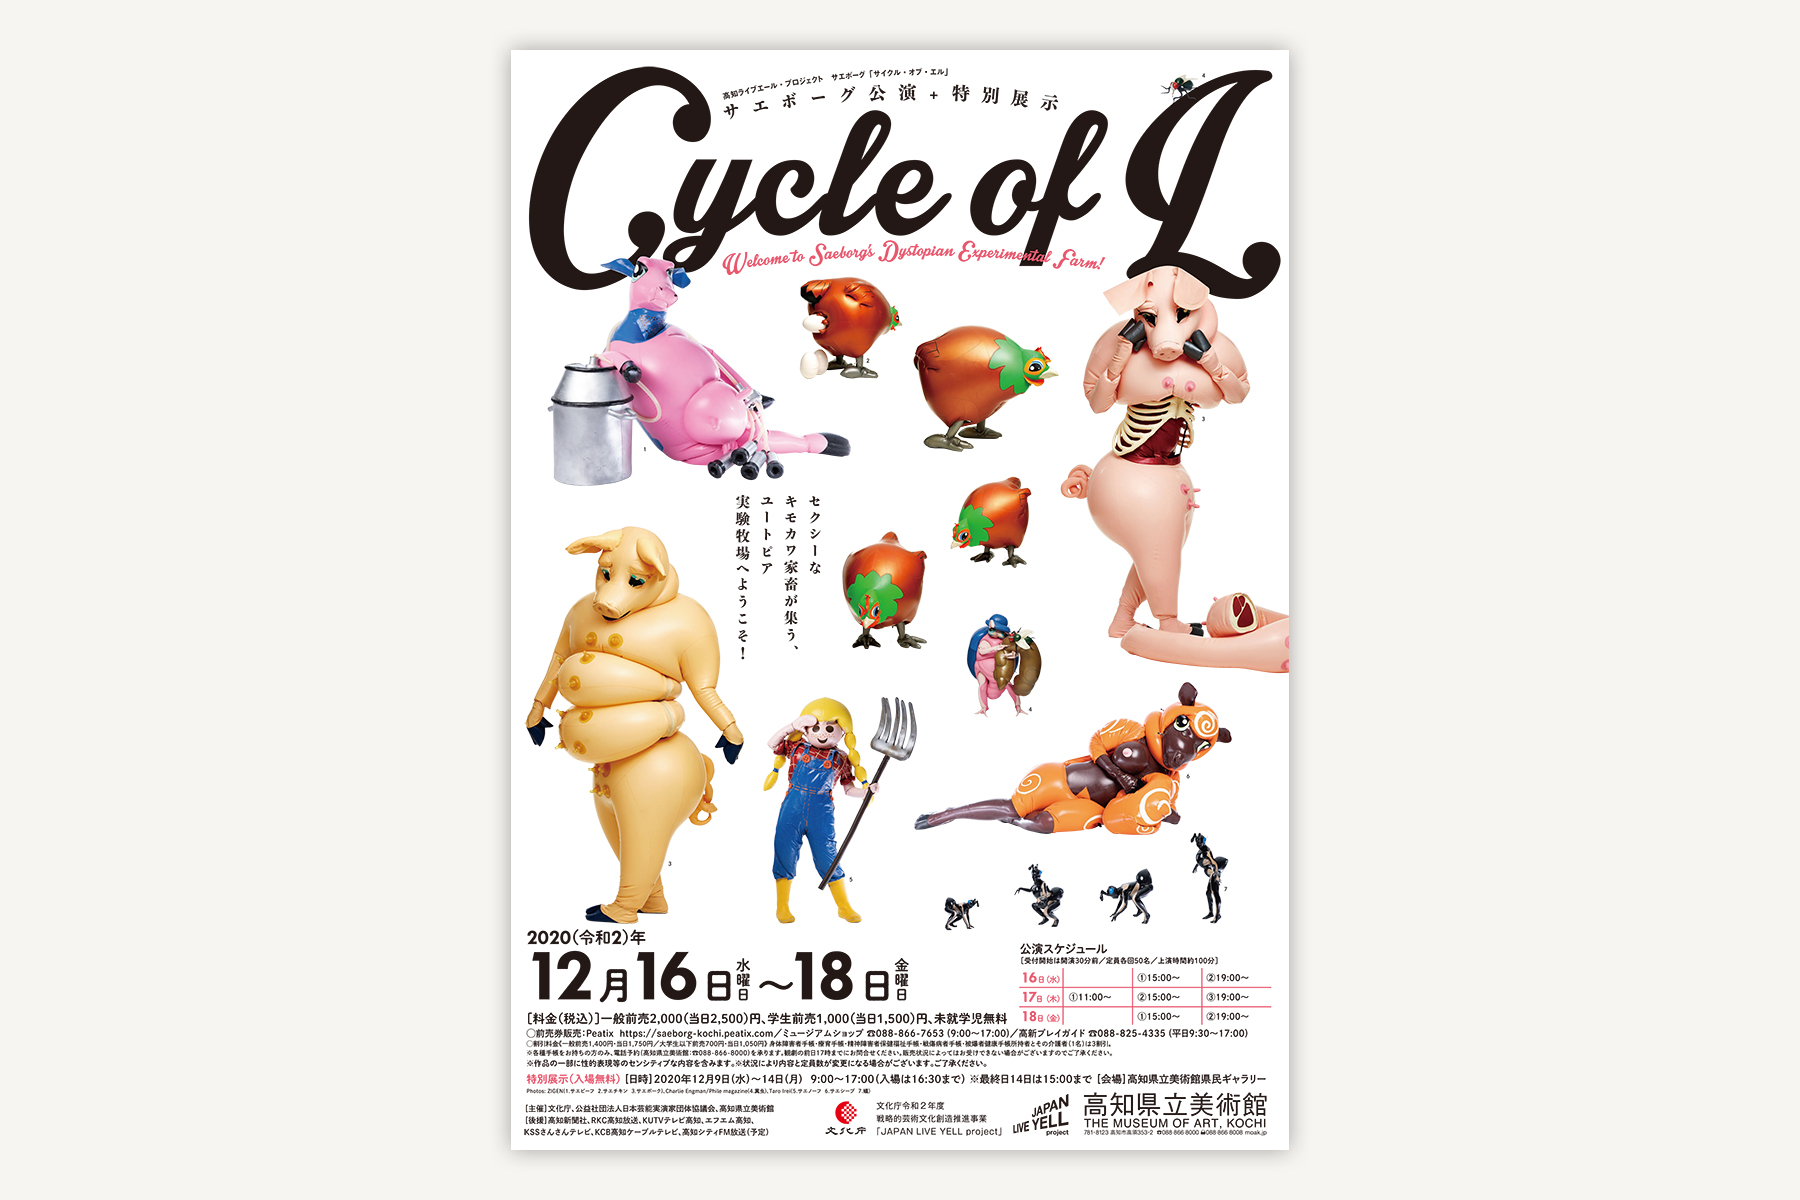 高知県立美術館 サエボーグ公演『Cycle of L 』